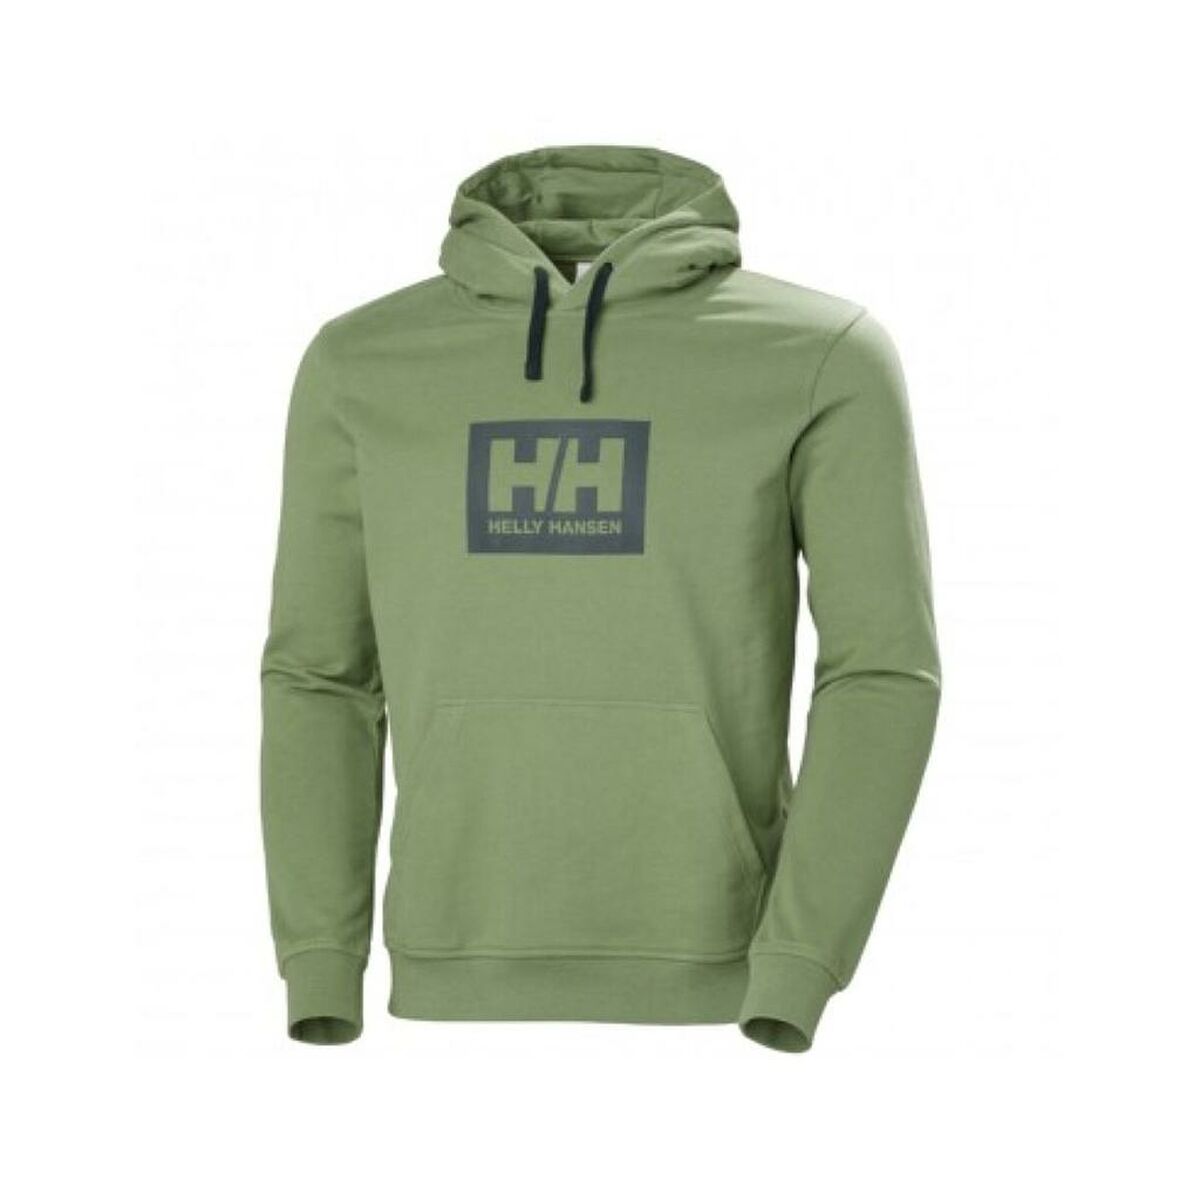 Herren Sweater mit Kapuze Helly Hansen 53289 406  grün - AWK Flagship